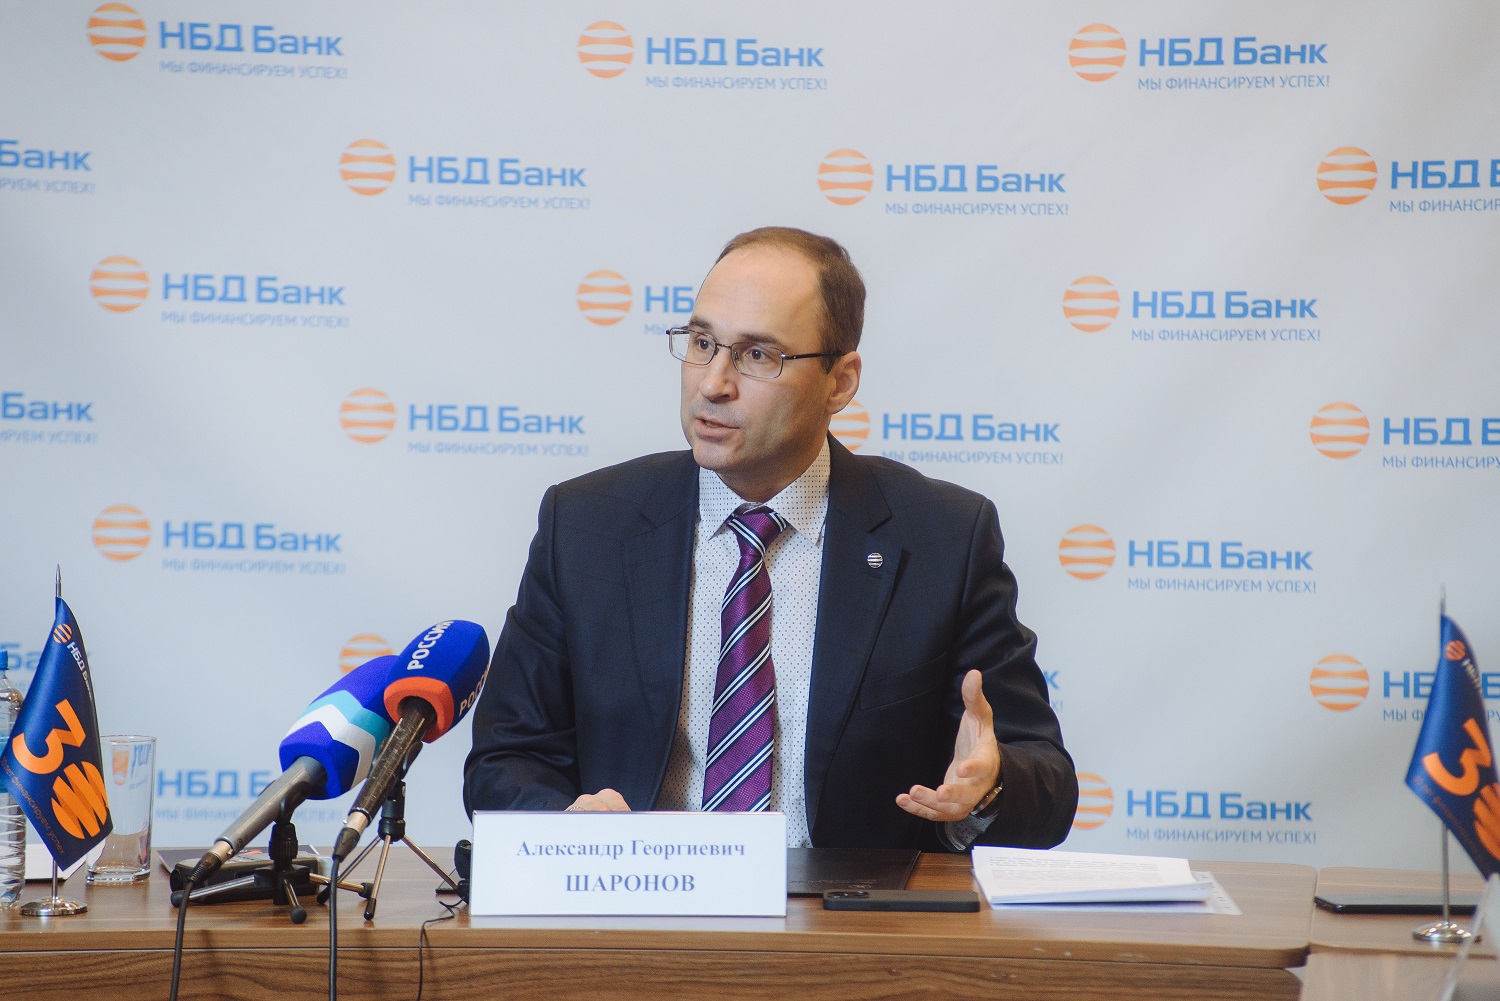 Александр Шаронов:  «Стабильность – приоритет сильного банка»